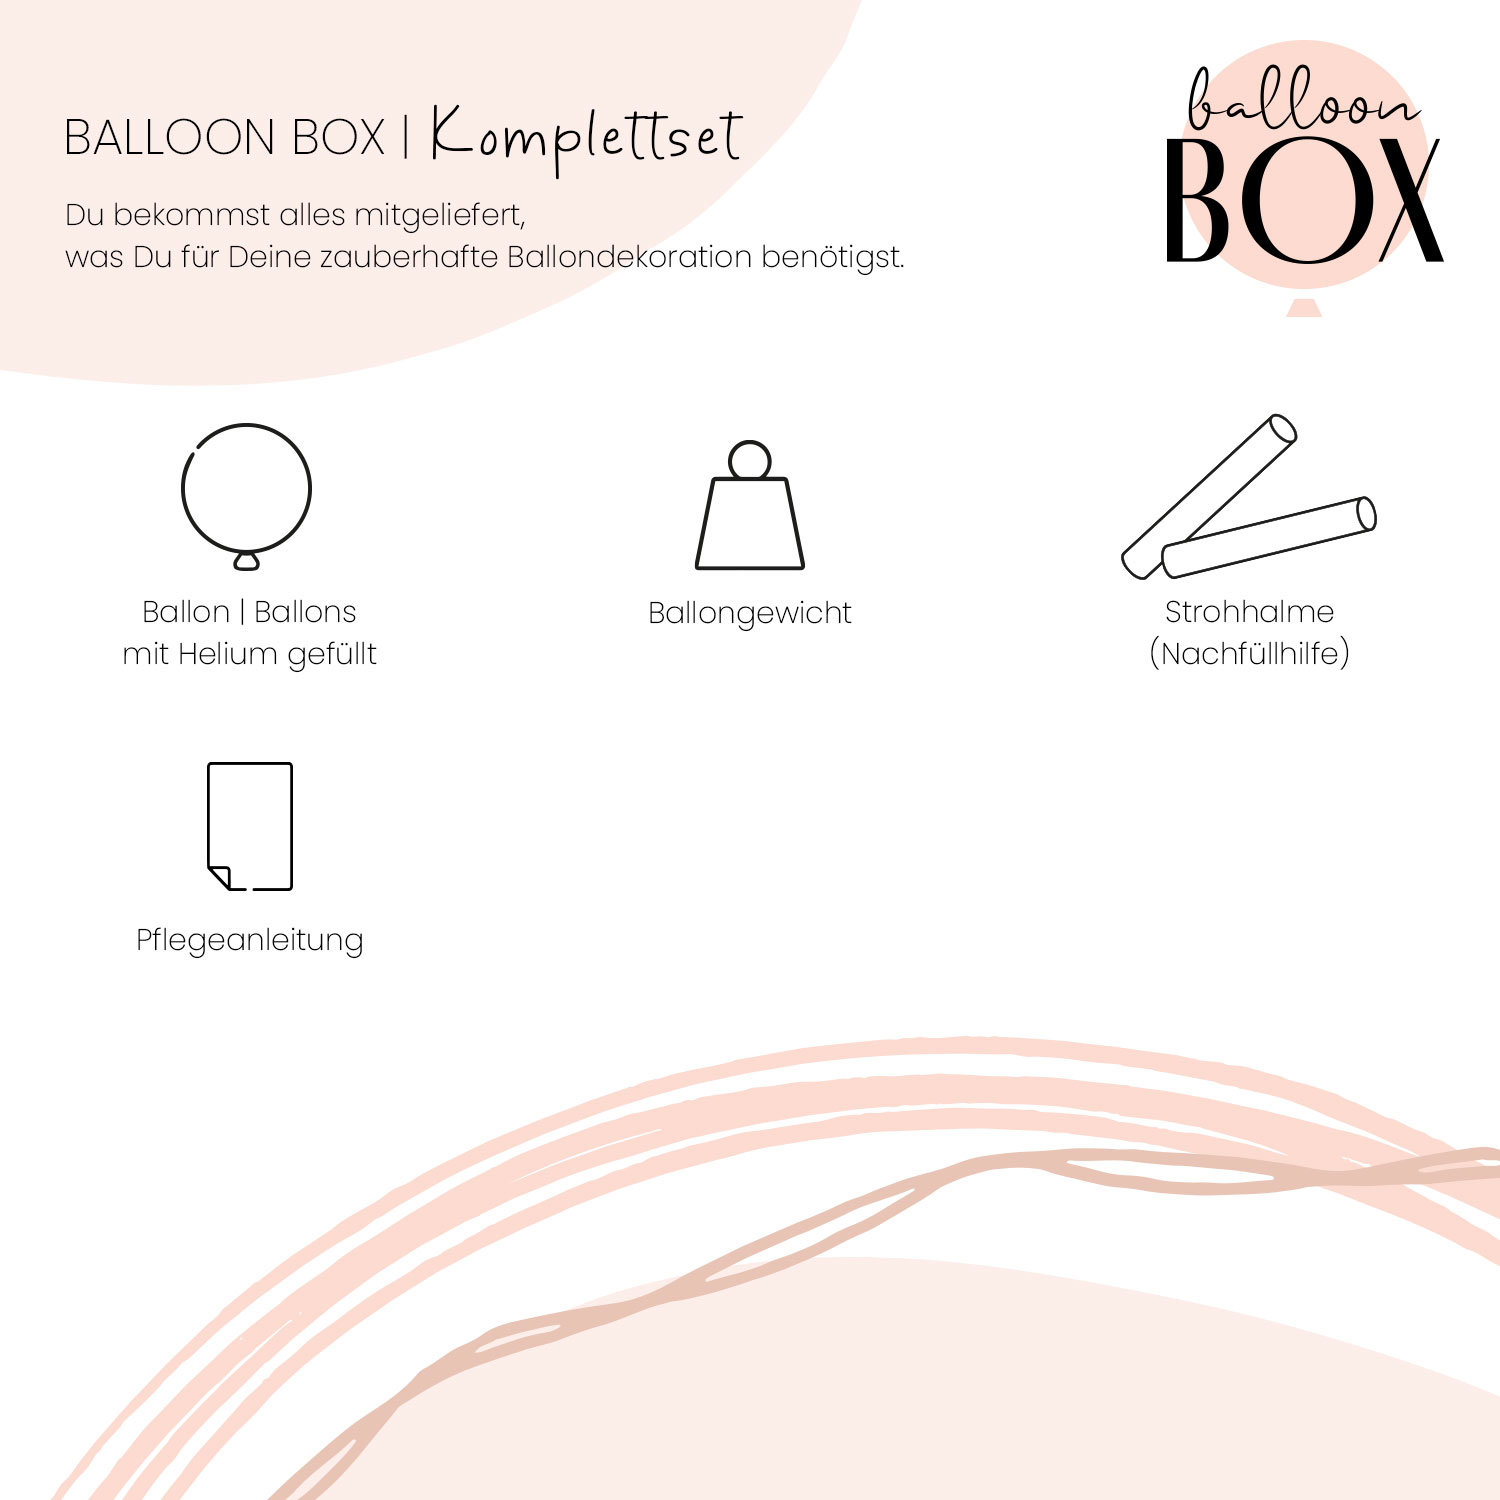 Heliumballon in a Box - Viel Glück für die Zukunft